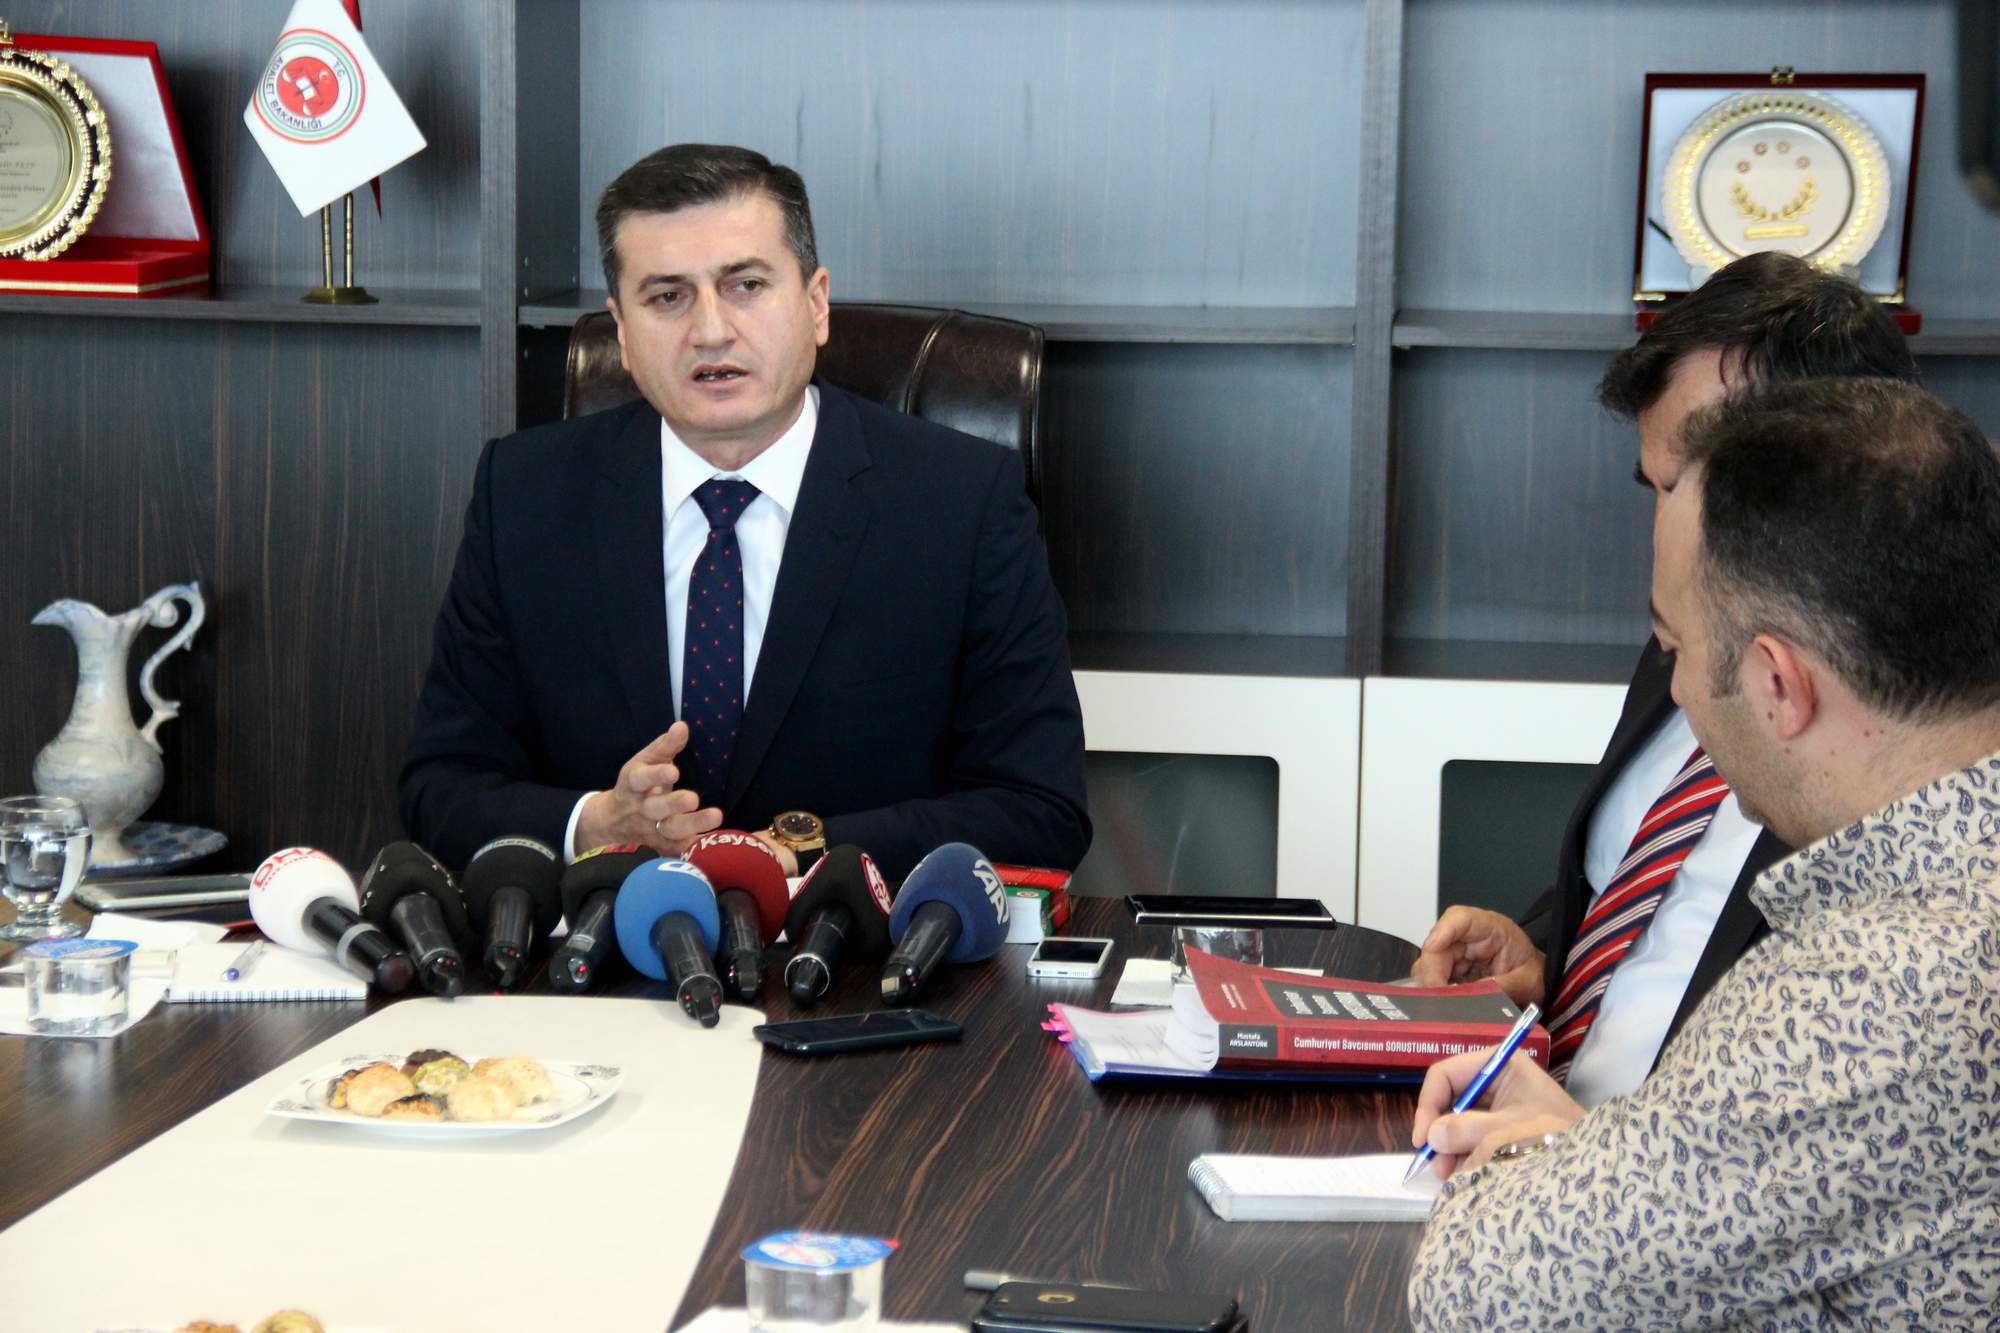 Kayseri Cumhuriyet Başsavcısı: “404 sanığa FETÖ üyeliği suçundan mahkumiyet verildi”